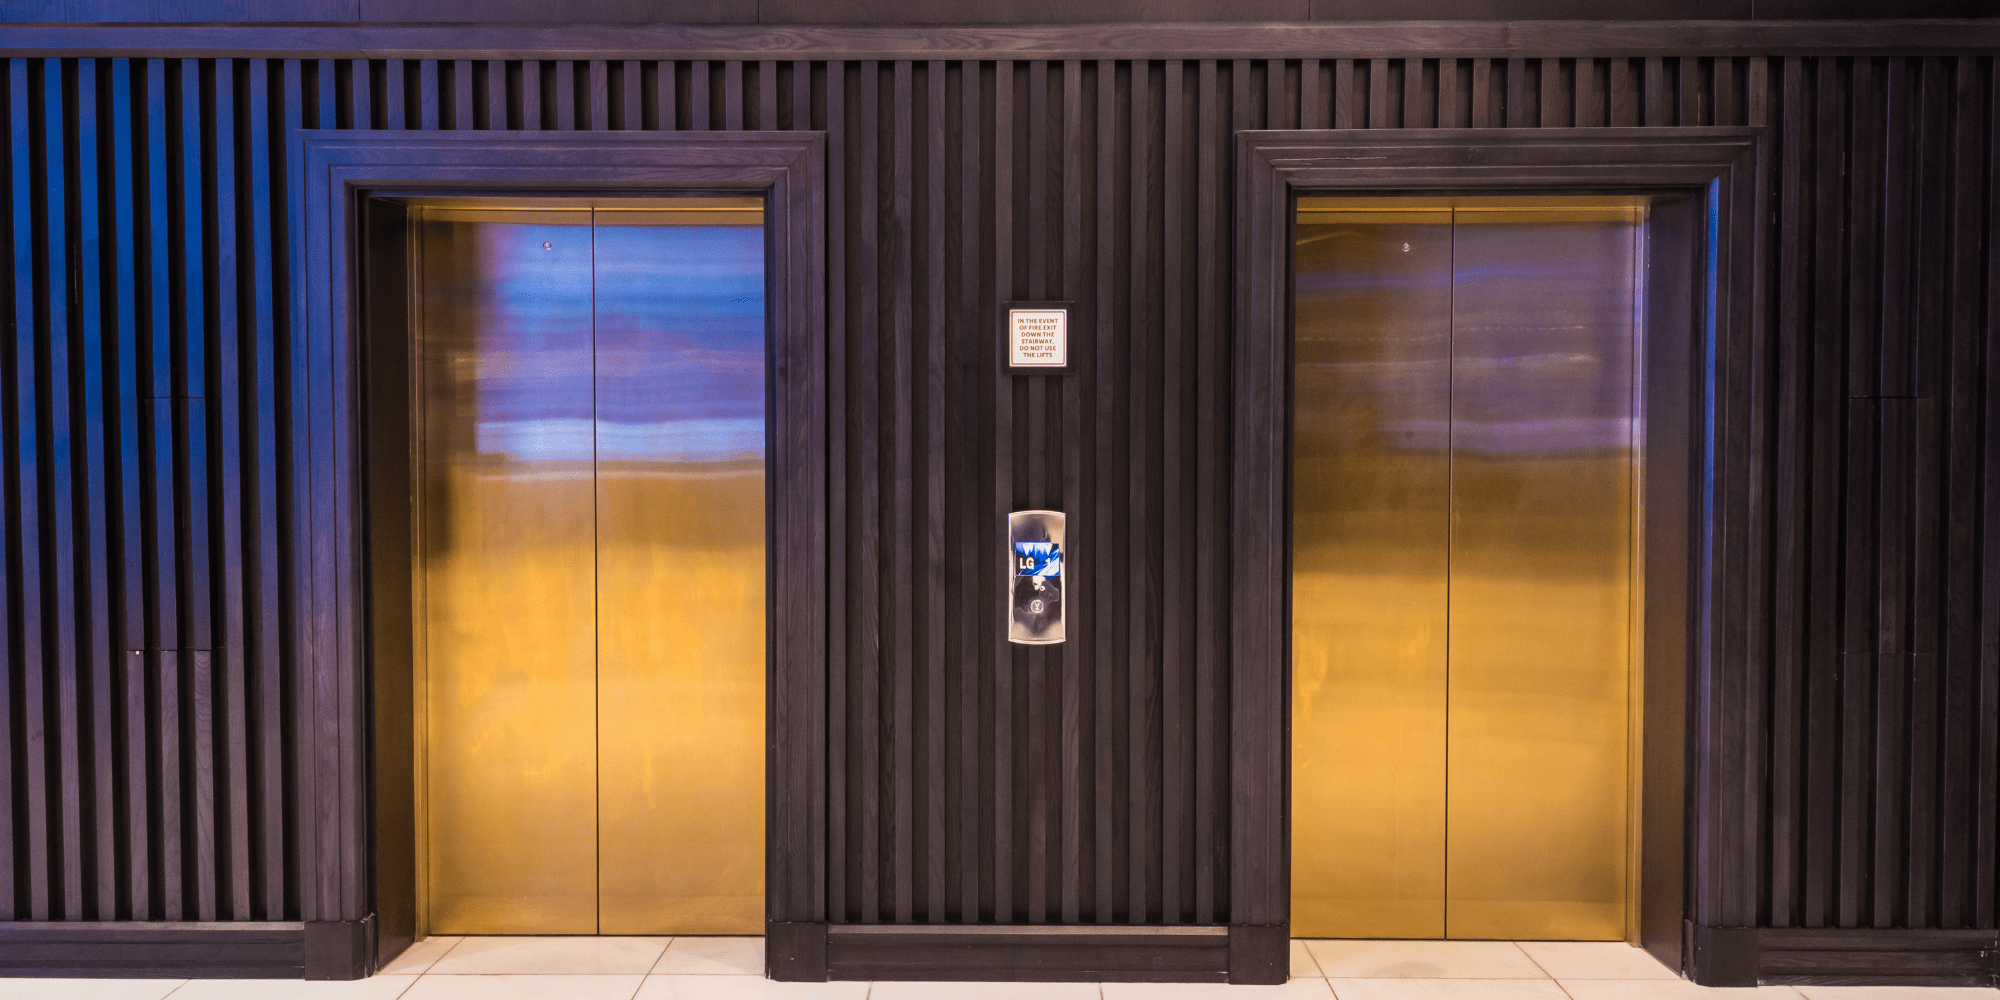 Porte ascensori in acciaio inox colorato, inox colorato per ascensori